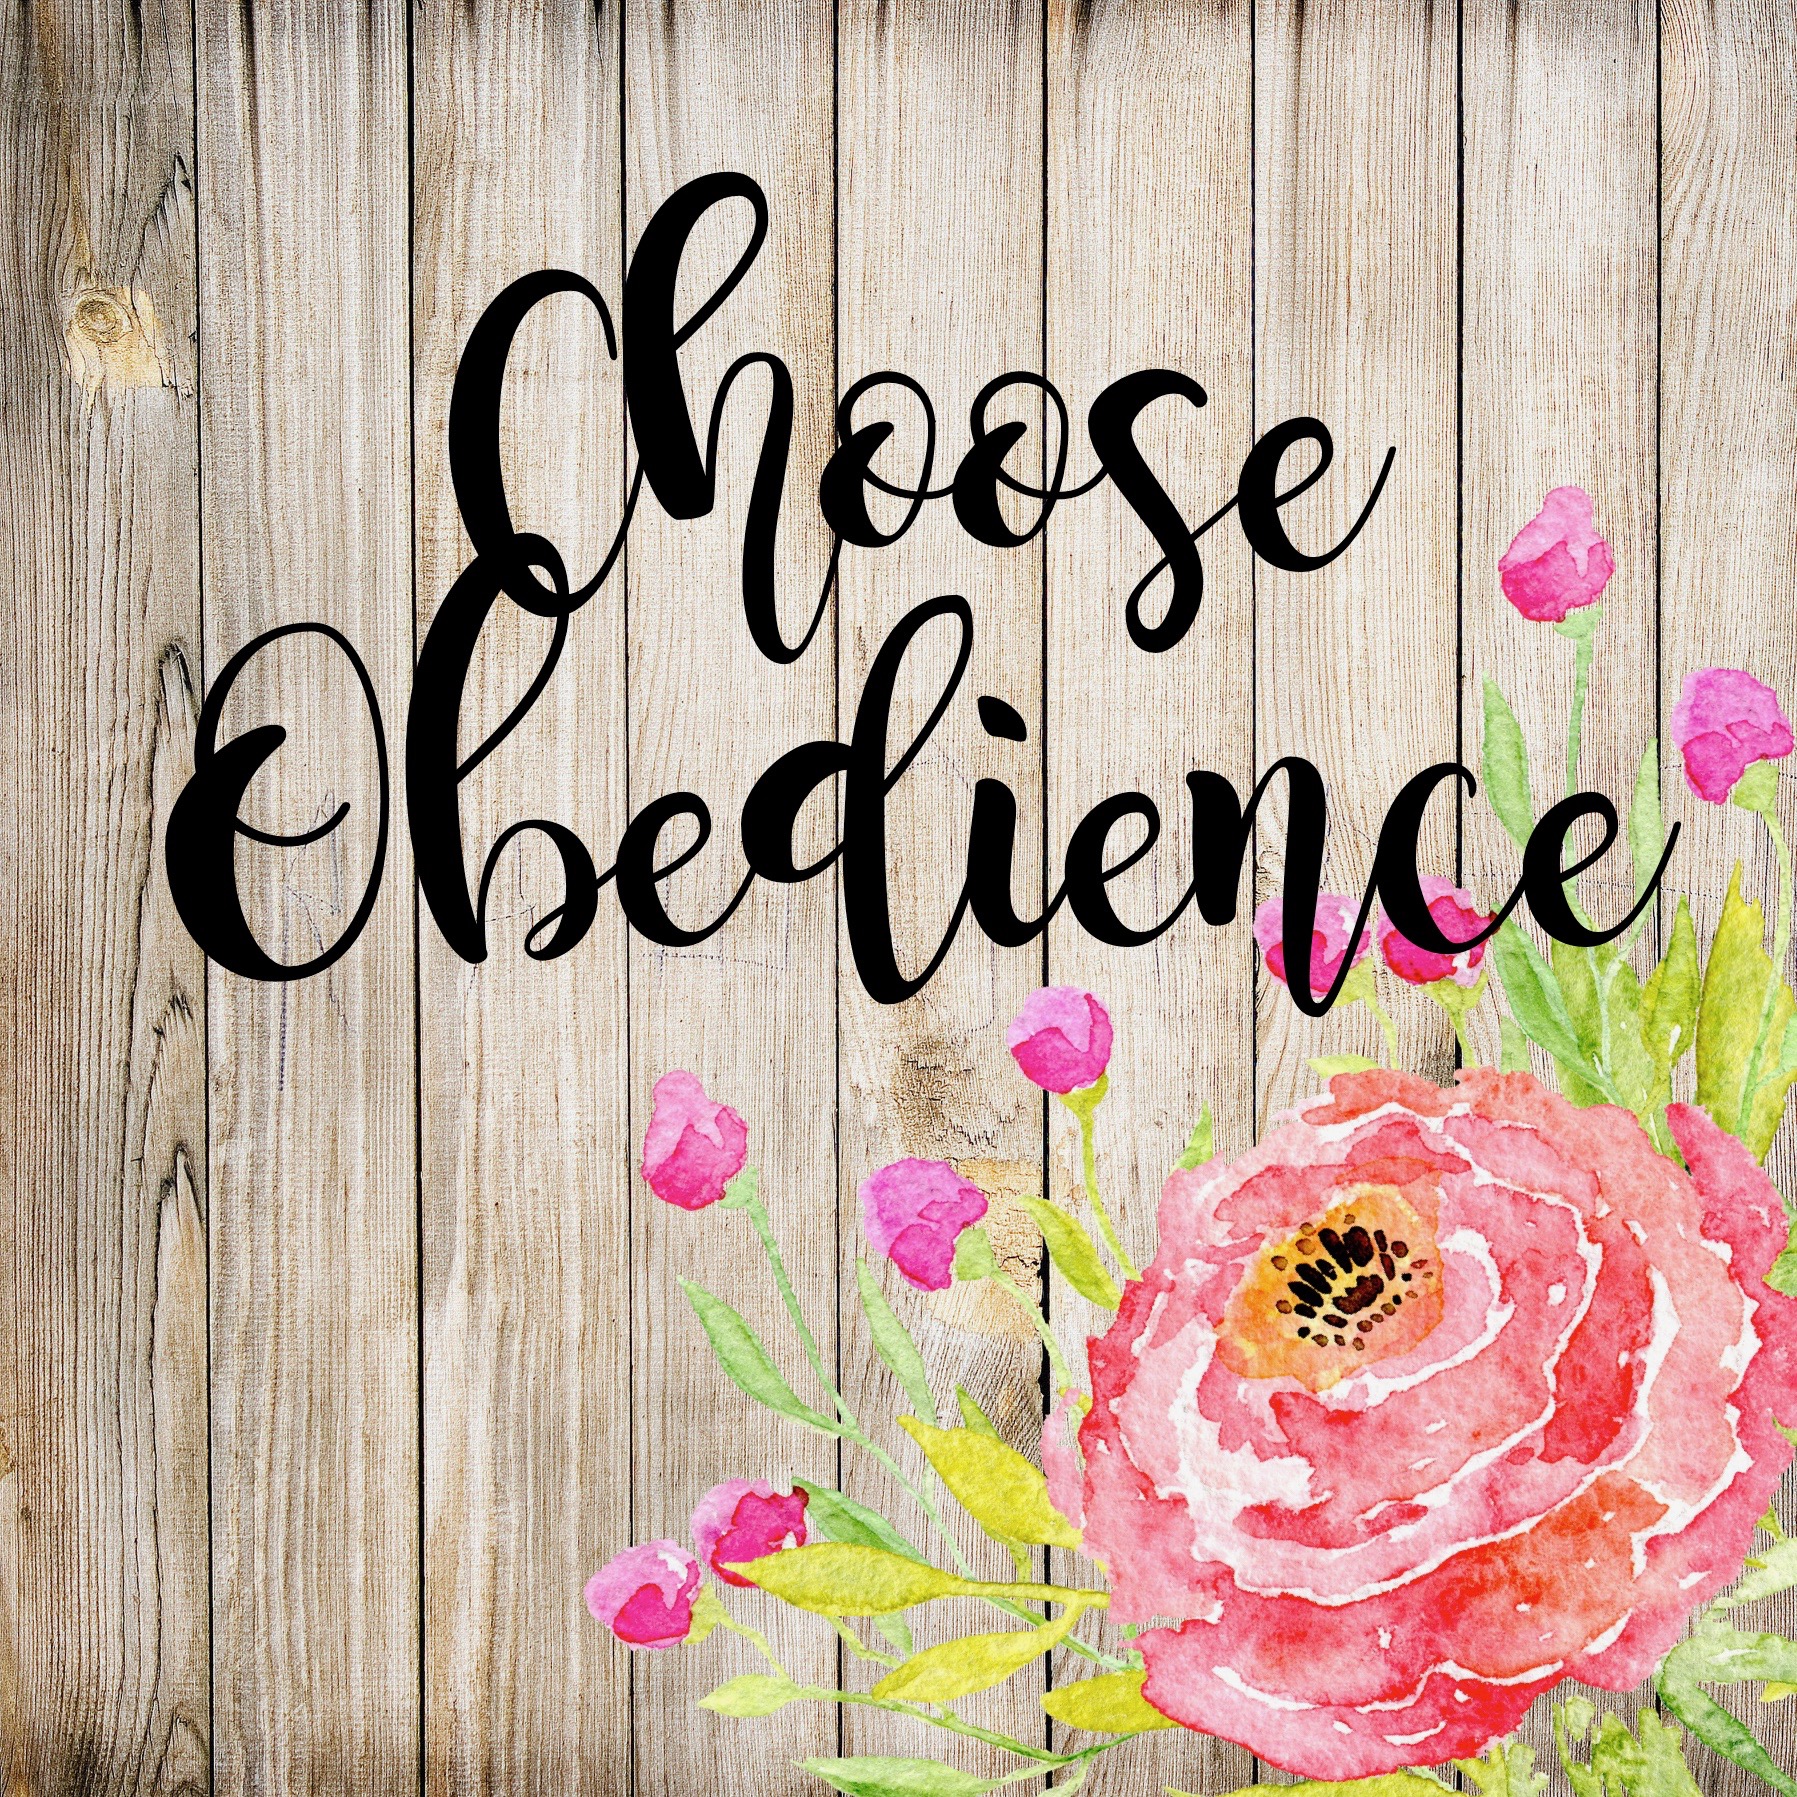 choosoe obedience